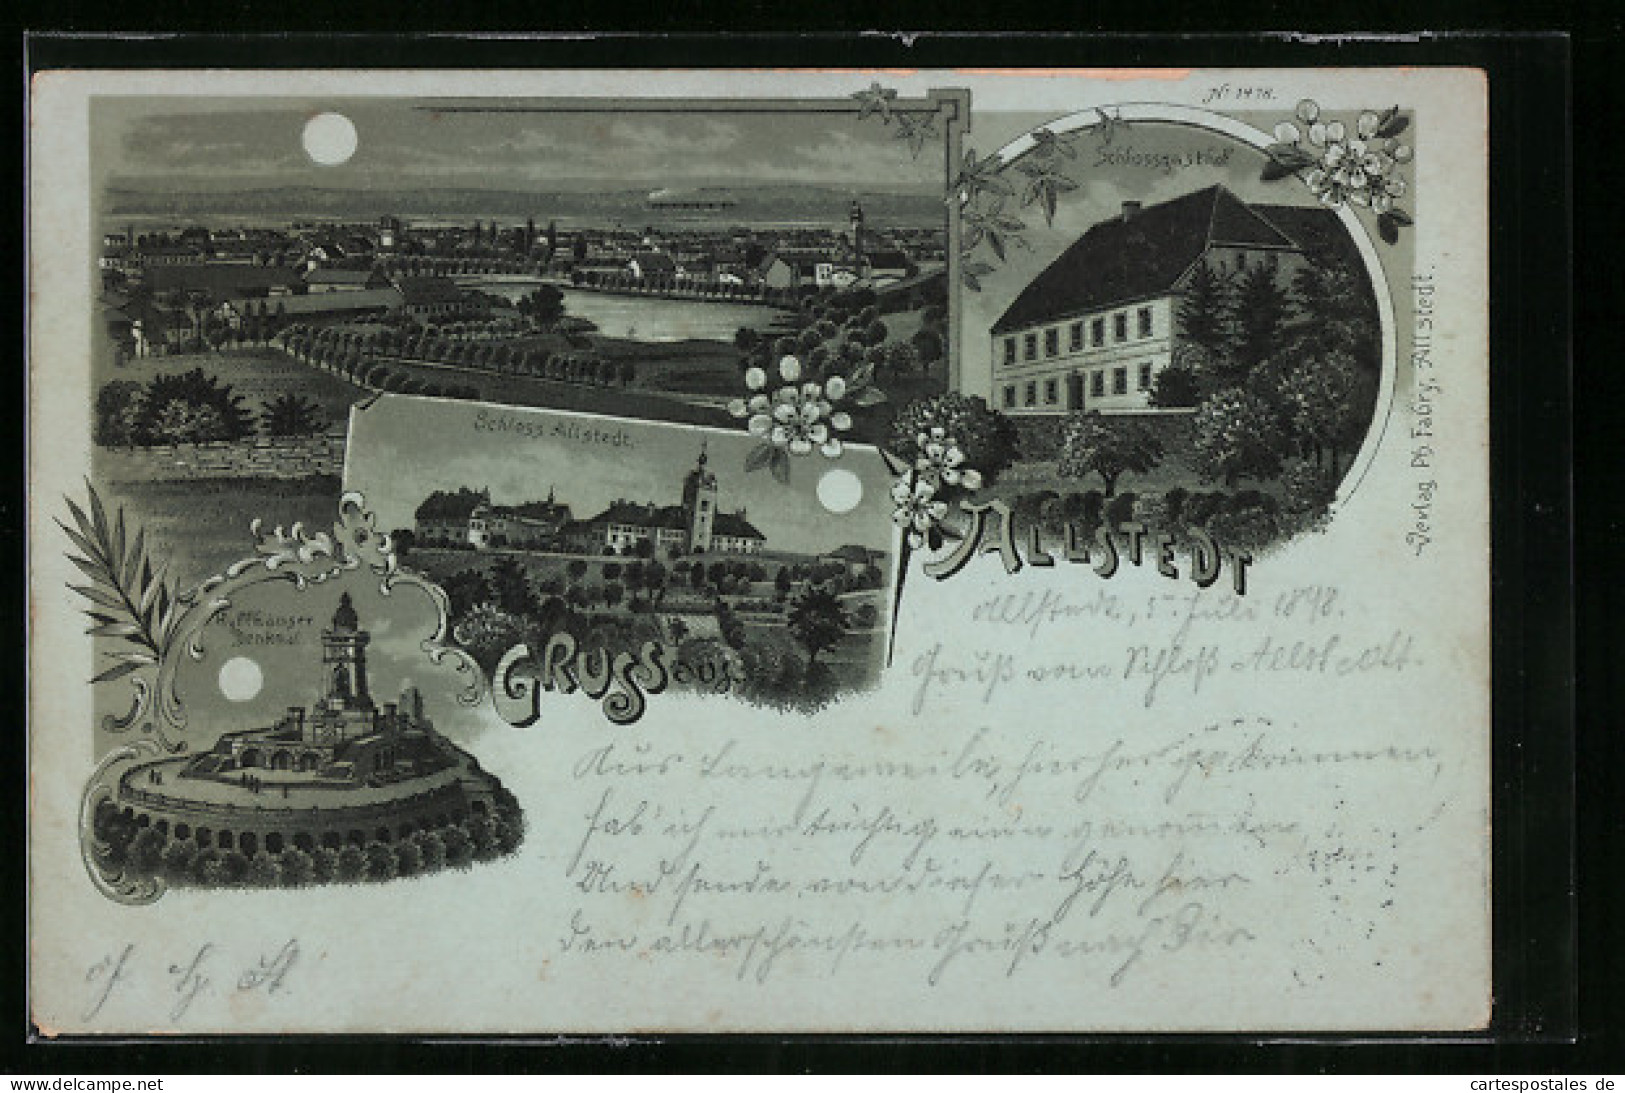 Mondschein-Lithographie Allstedt, Panorama, Schlossgasthof, Kyffhäuser Denkmal  - Kyffhäuser